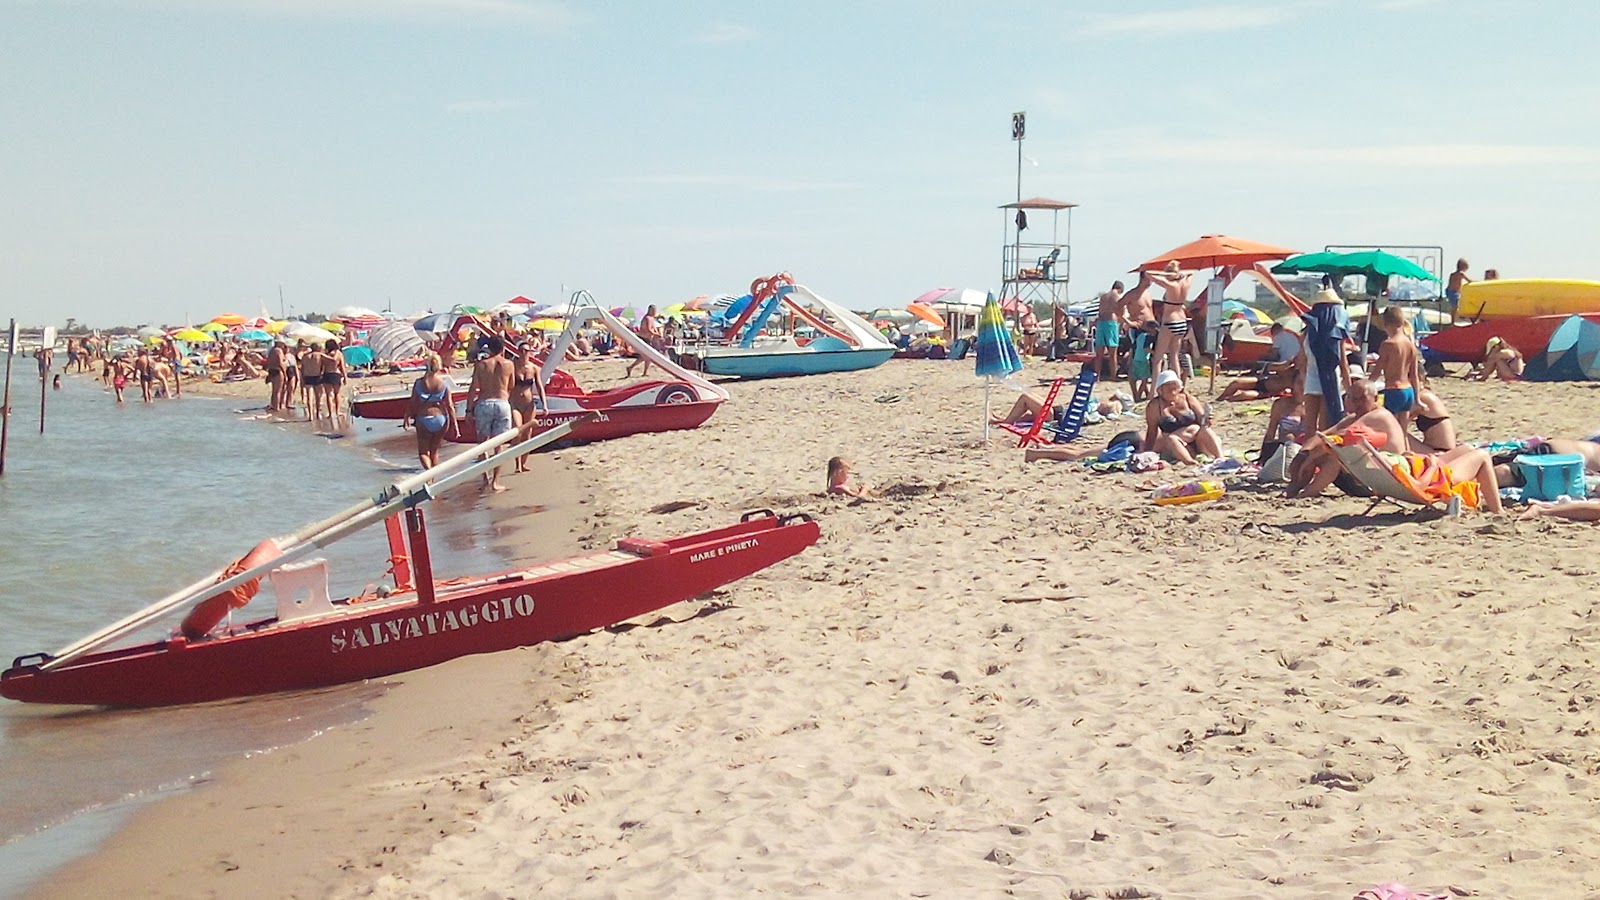 Spiaggia di Comacchio的照片 - 受到放松专家欢迎的热门地点